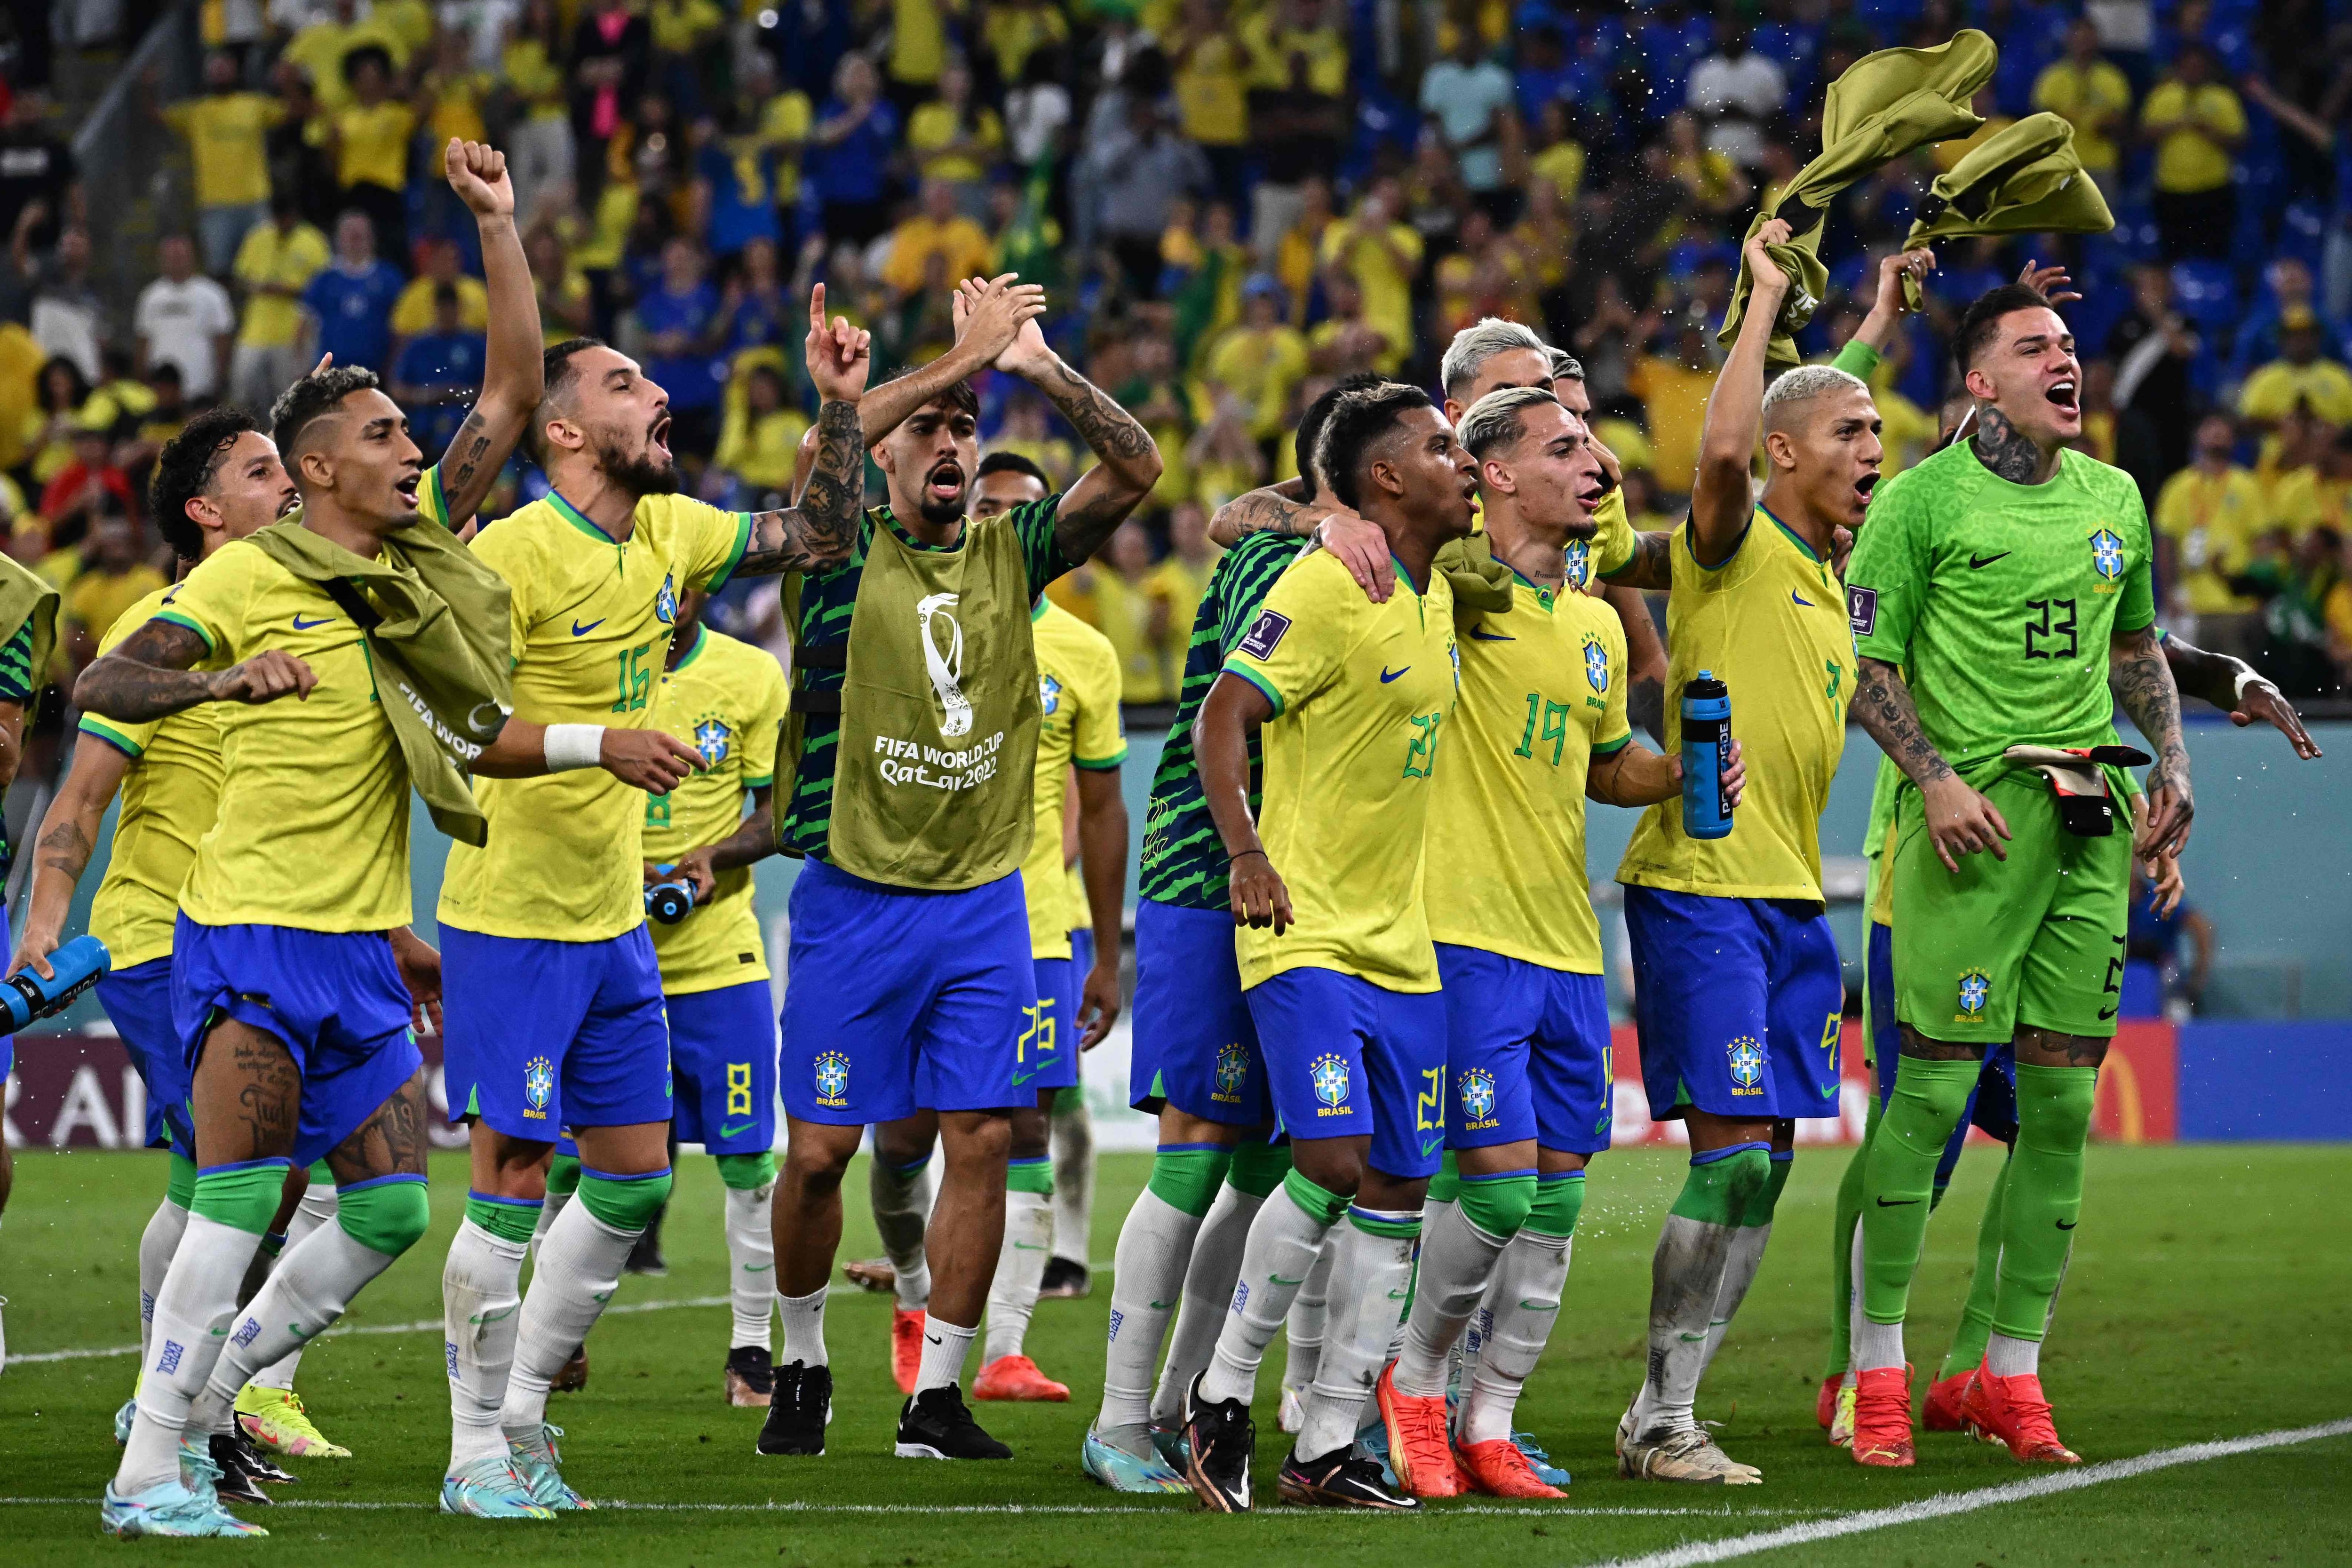 Confira as datas e horários dos jogos do Brasil na Copa do Mundo do Catar,  incluindo o possível caminho até a final - Seu Dinheiro